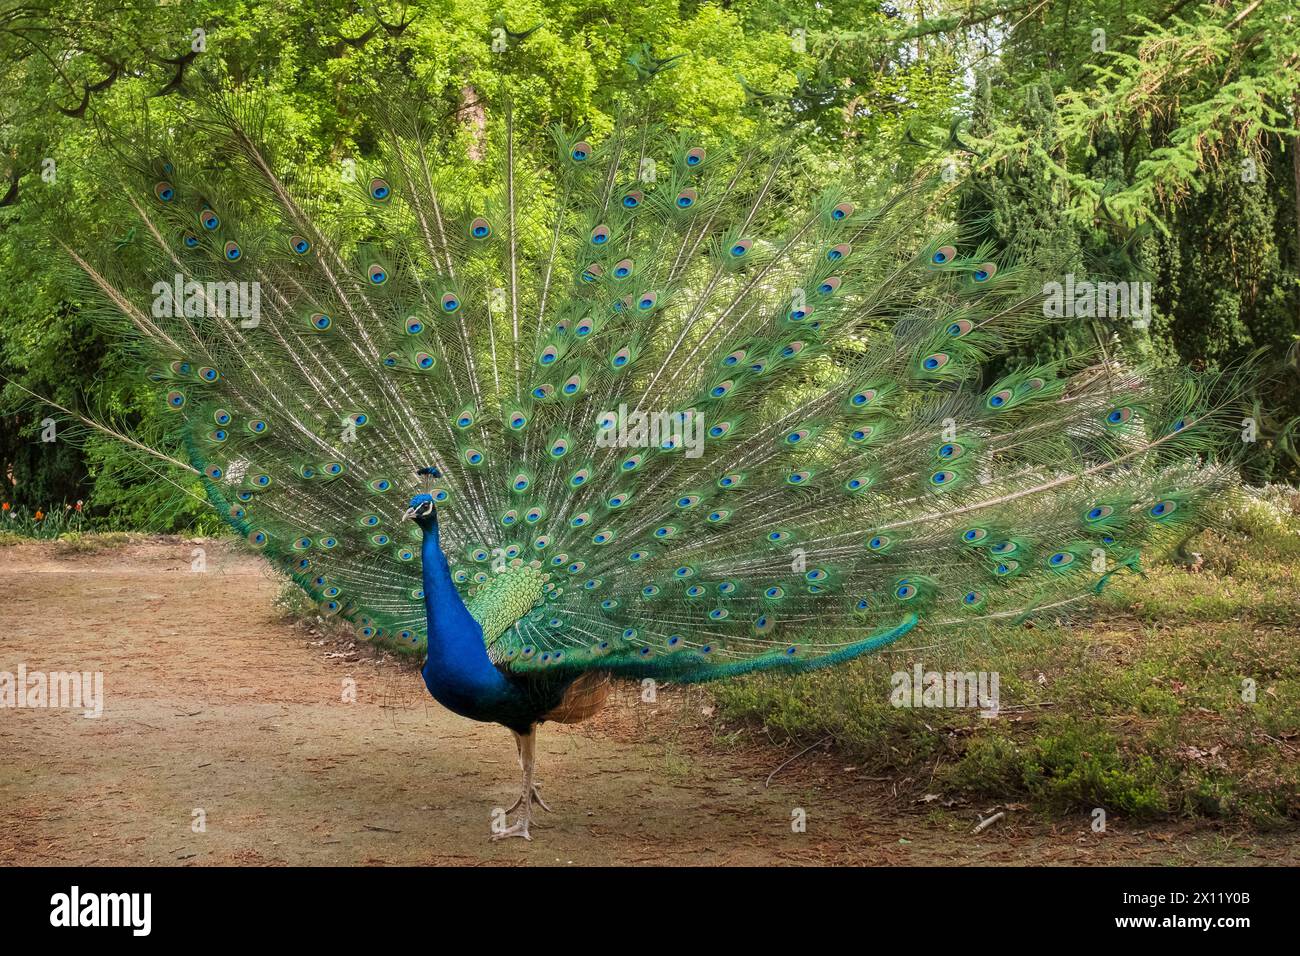 Paon bleu dans le jardin botanique forestier de Cologne. Le paon bleu (Pavo cristatus) est une espèce d'oiseau de la famille des faisans (Phasianidae) Banque D'Images